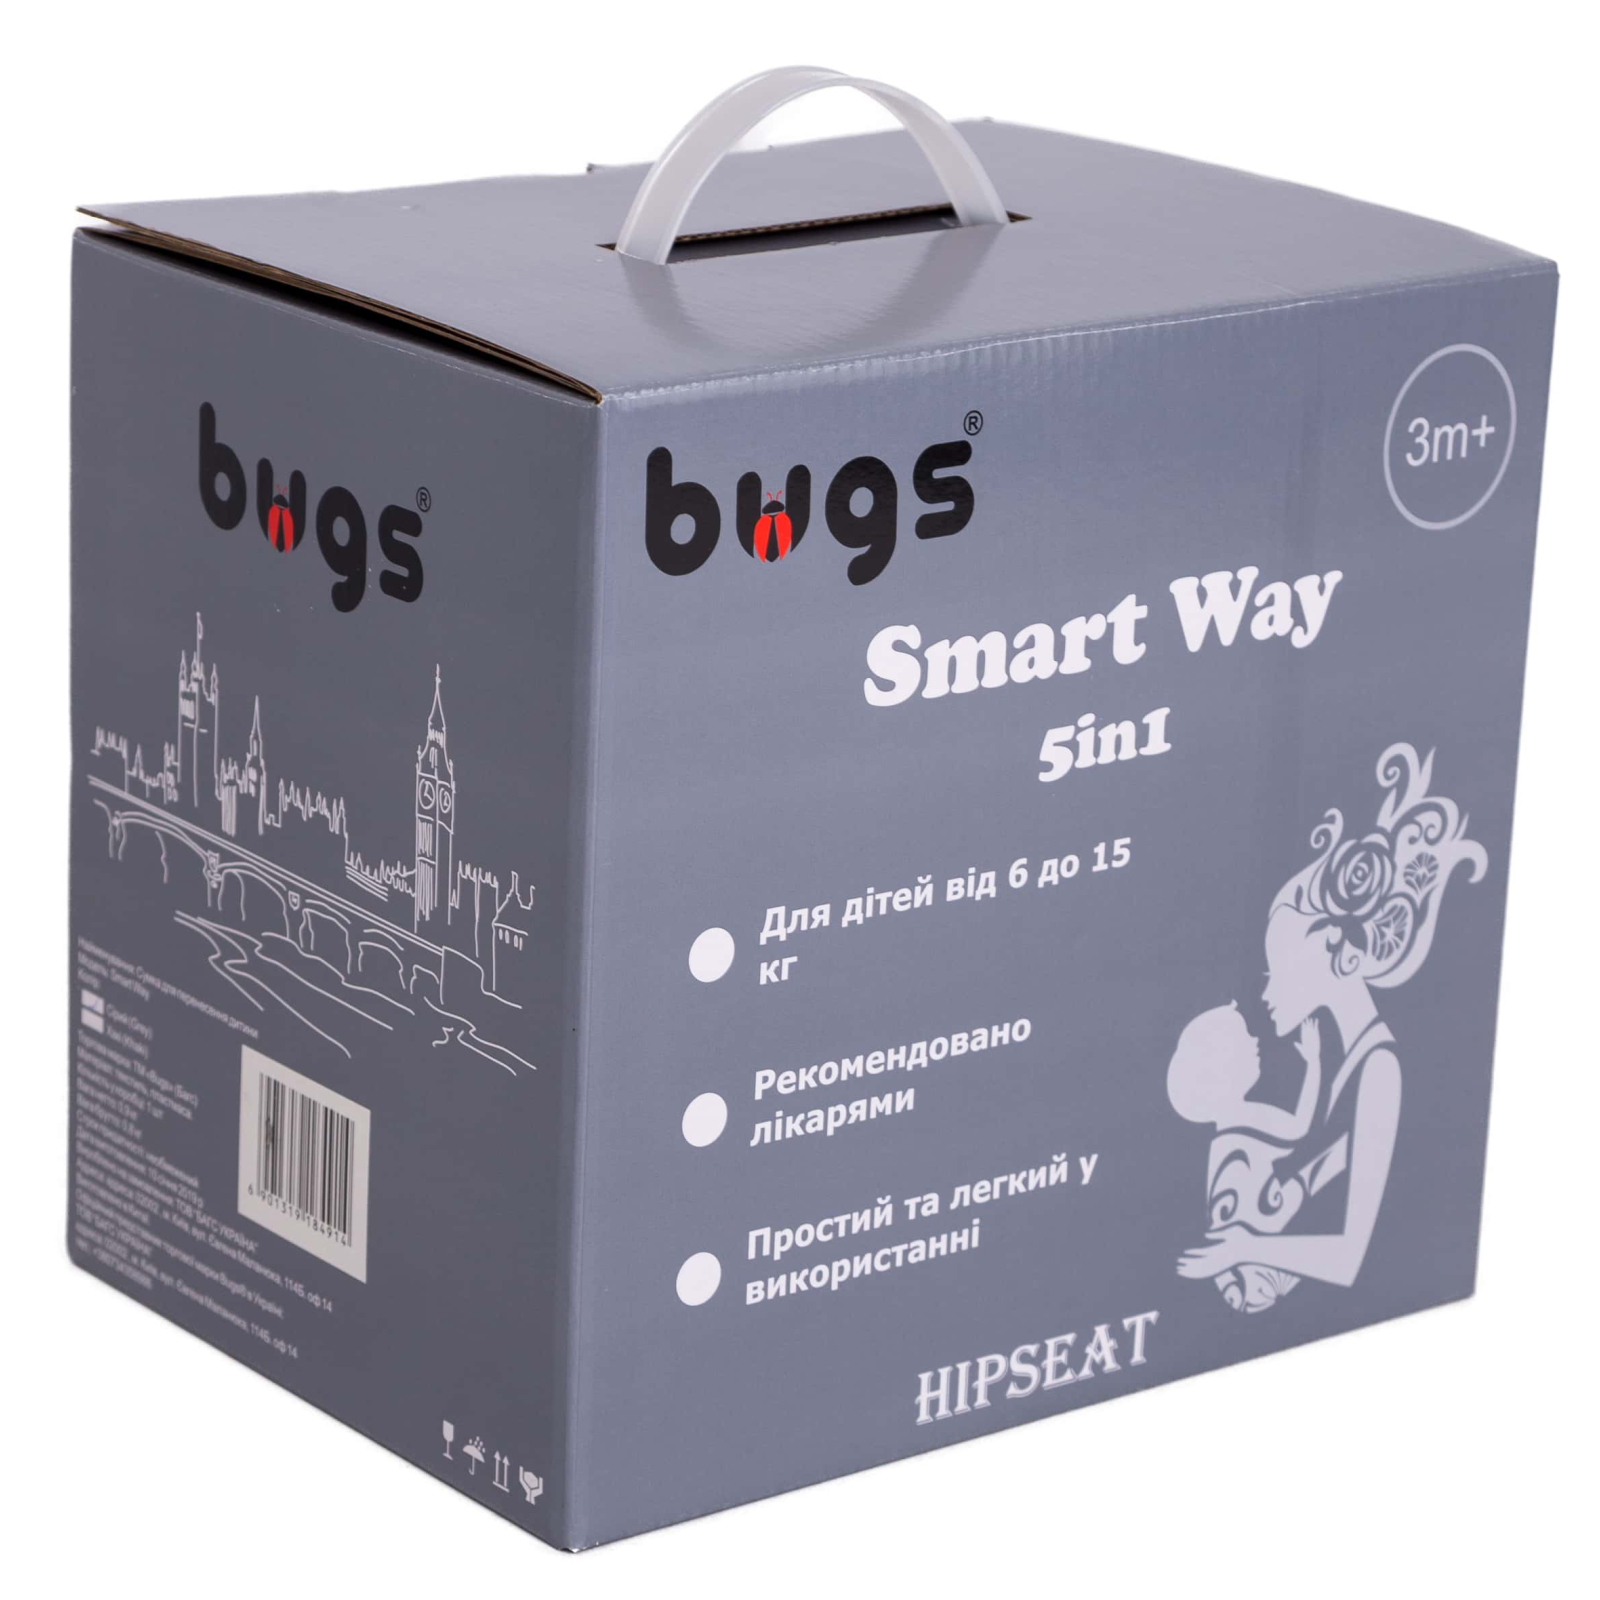 Рюкзак-переноска Bugs Хипсит 5 в 1 Smart Way Хаки (6901319184921) изображение 4